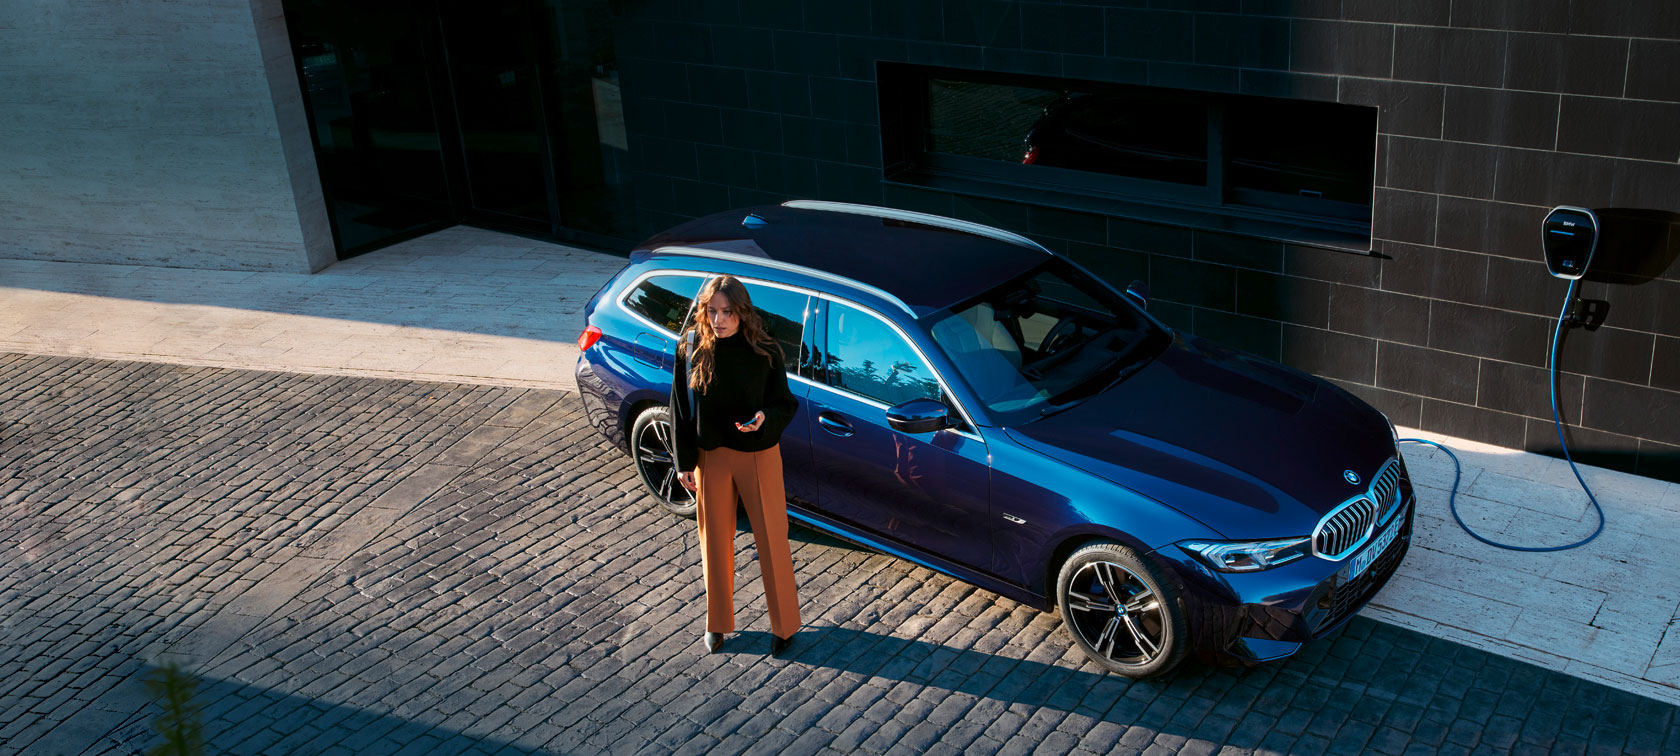 BMW Niederlassung Stuttgart - Ihr Partner beim Autokauf